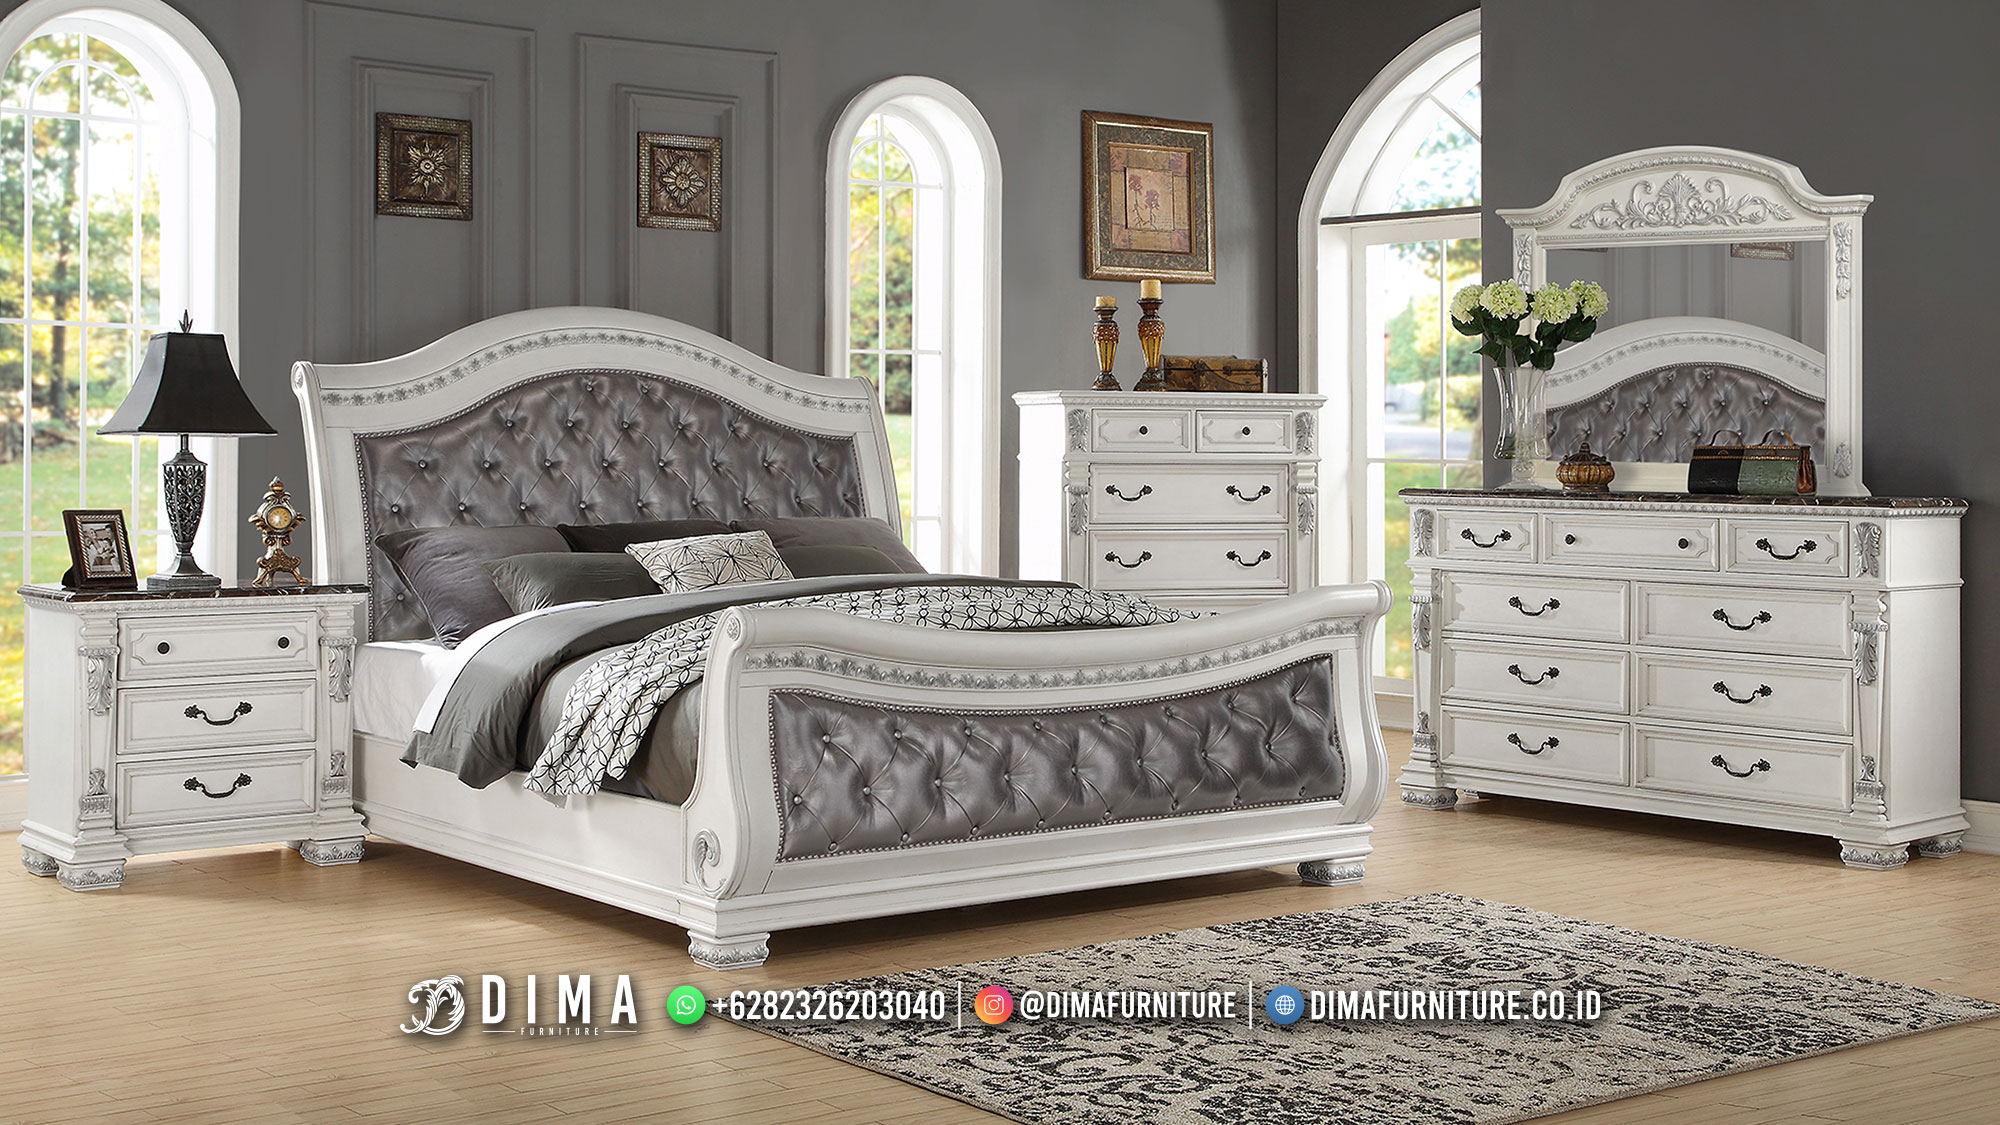 Custom Design Tempat Tidur Minimalis Jok Klasik Mewah Bianca BM493